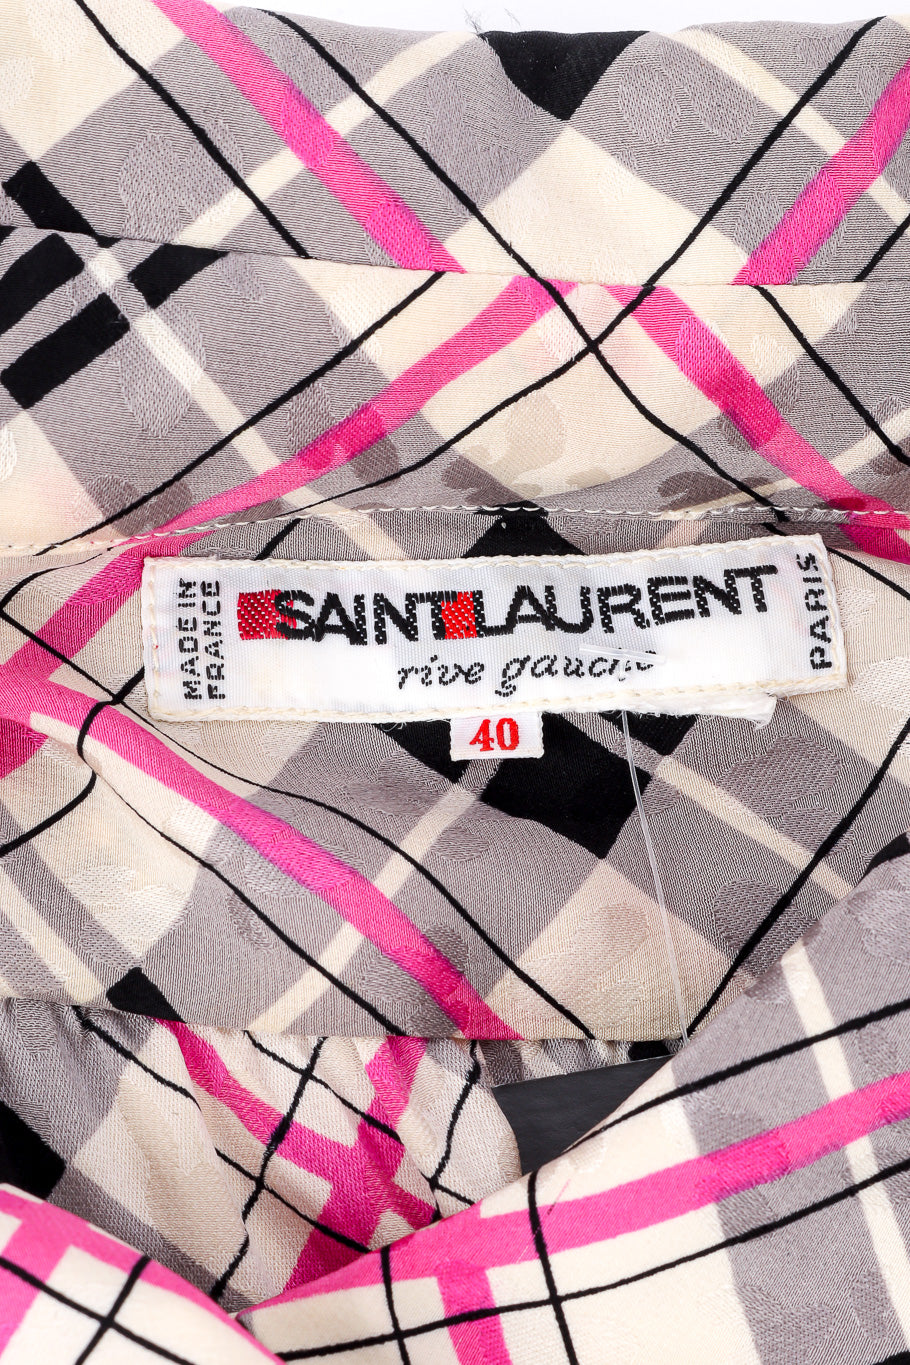 Silk dress by Saint Laurent label @recessla